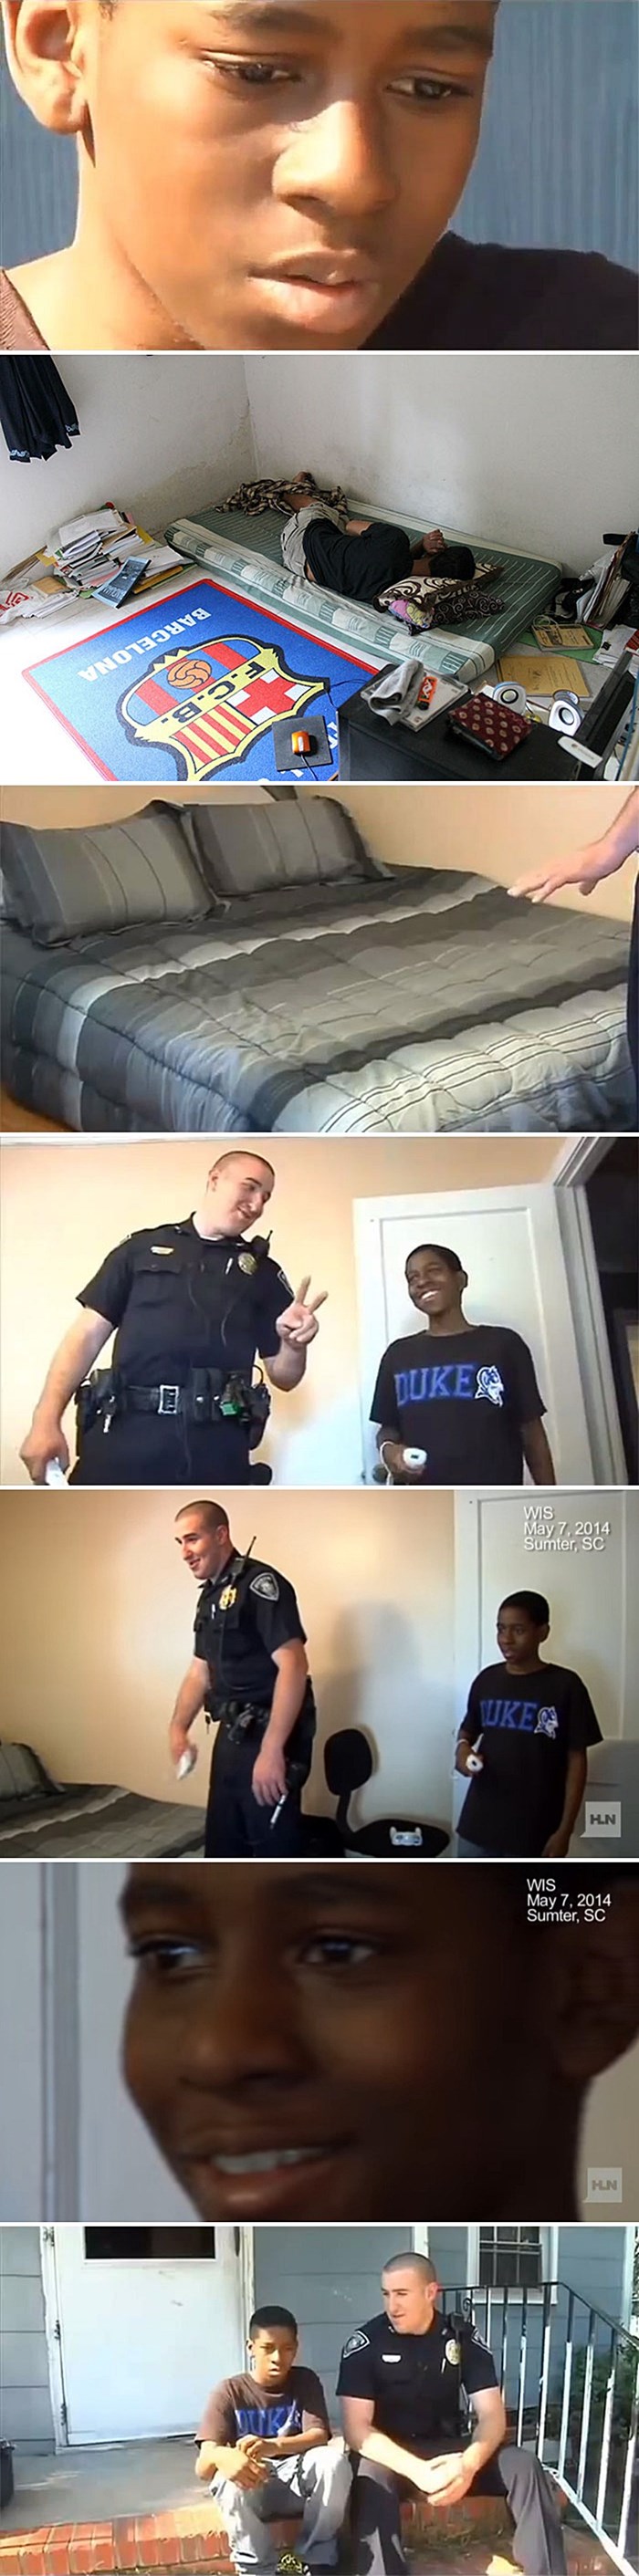 Kad je ovaj trinaestogodišnjak rekao da želi pobjeći od kuće, policajac je ušao njegovu sobu i ostao šokiran